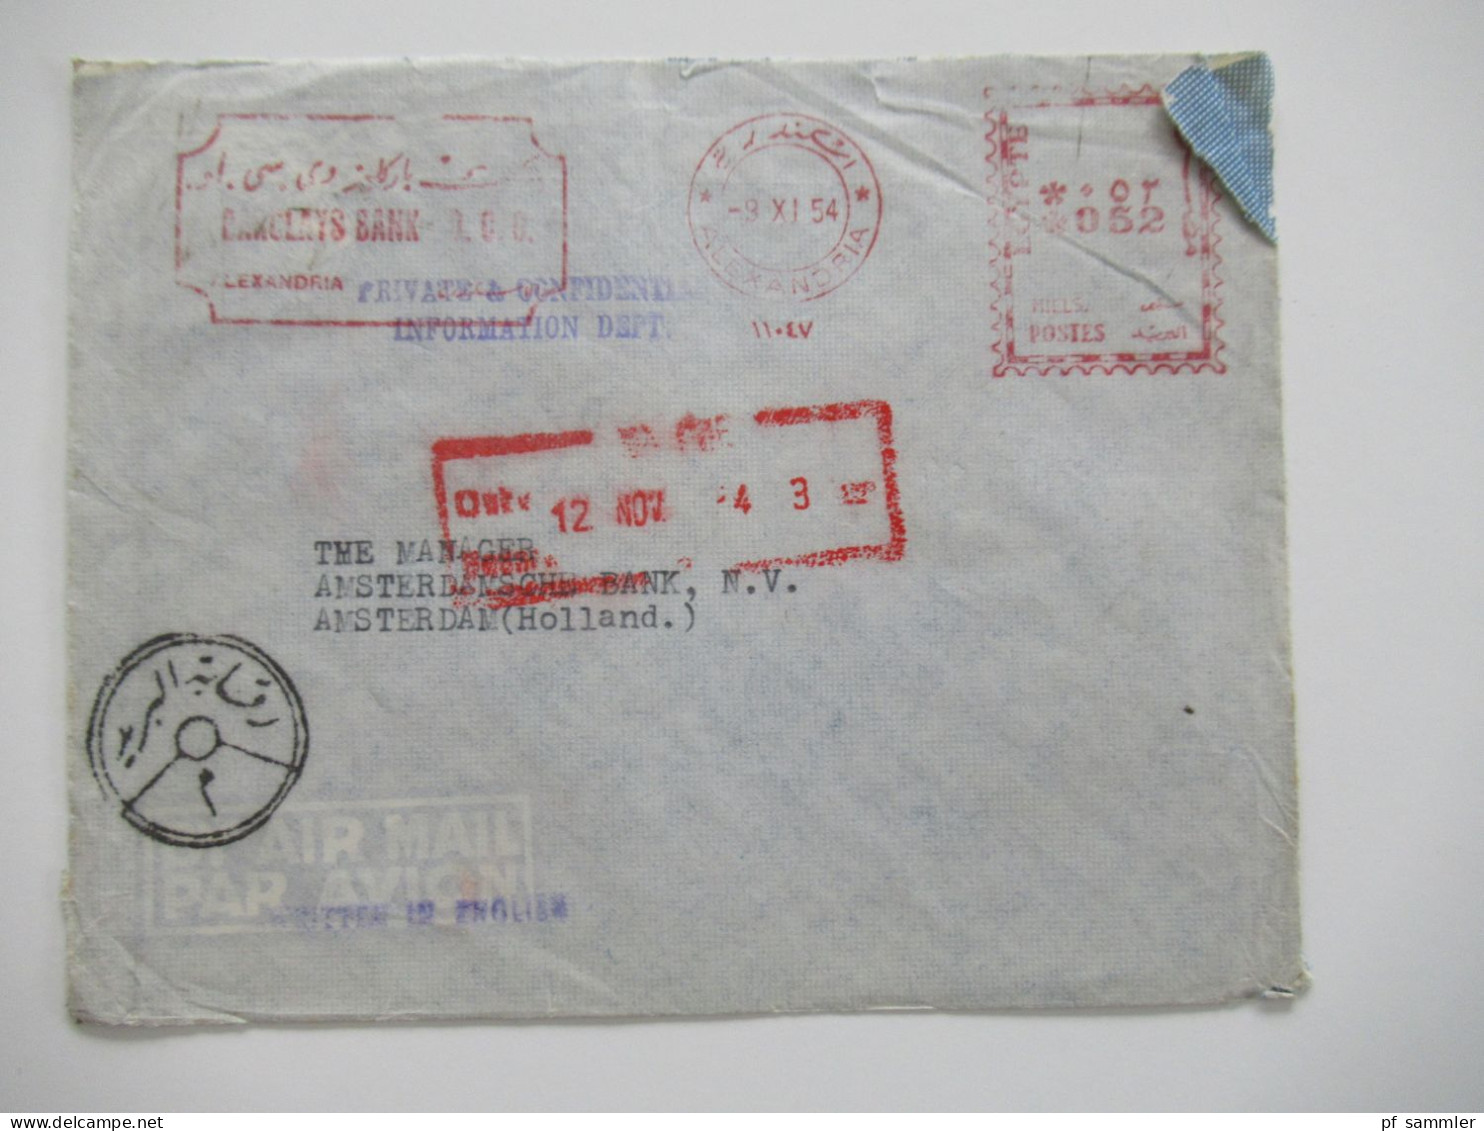 Ägypten 1950er Jahre Belegeposten 41 Belege / teils Einschreiben / Reko / viele Stempel / AFS Freistempel nach Holland